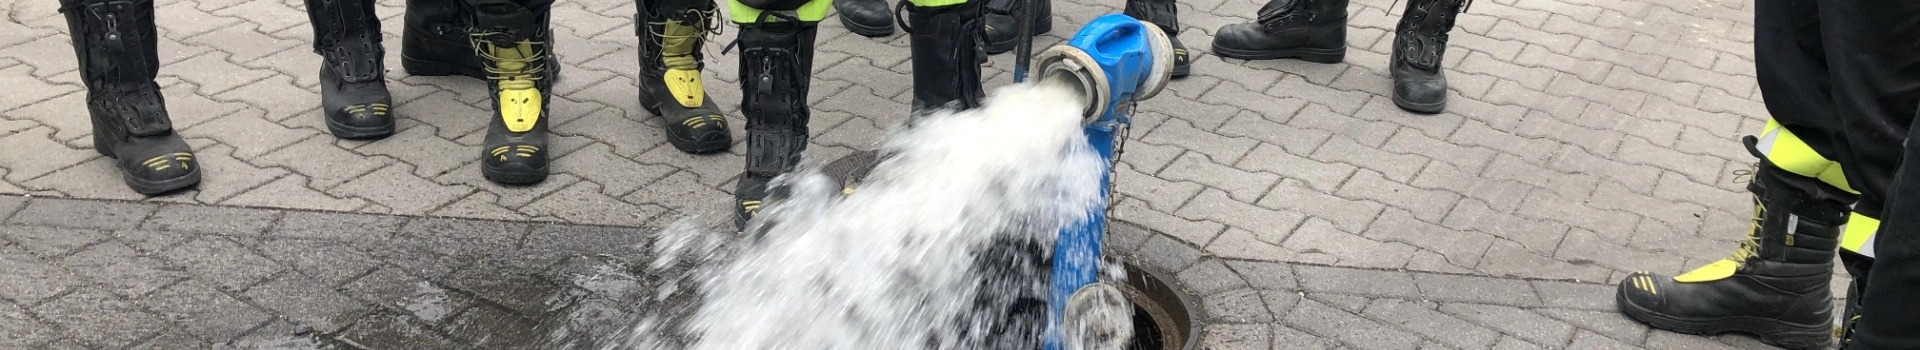 podpinanie hydrantu